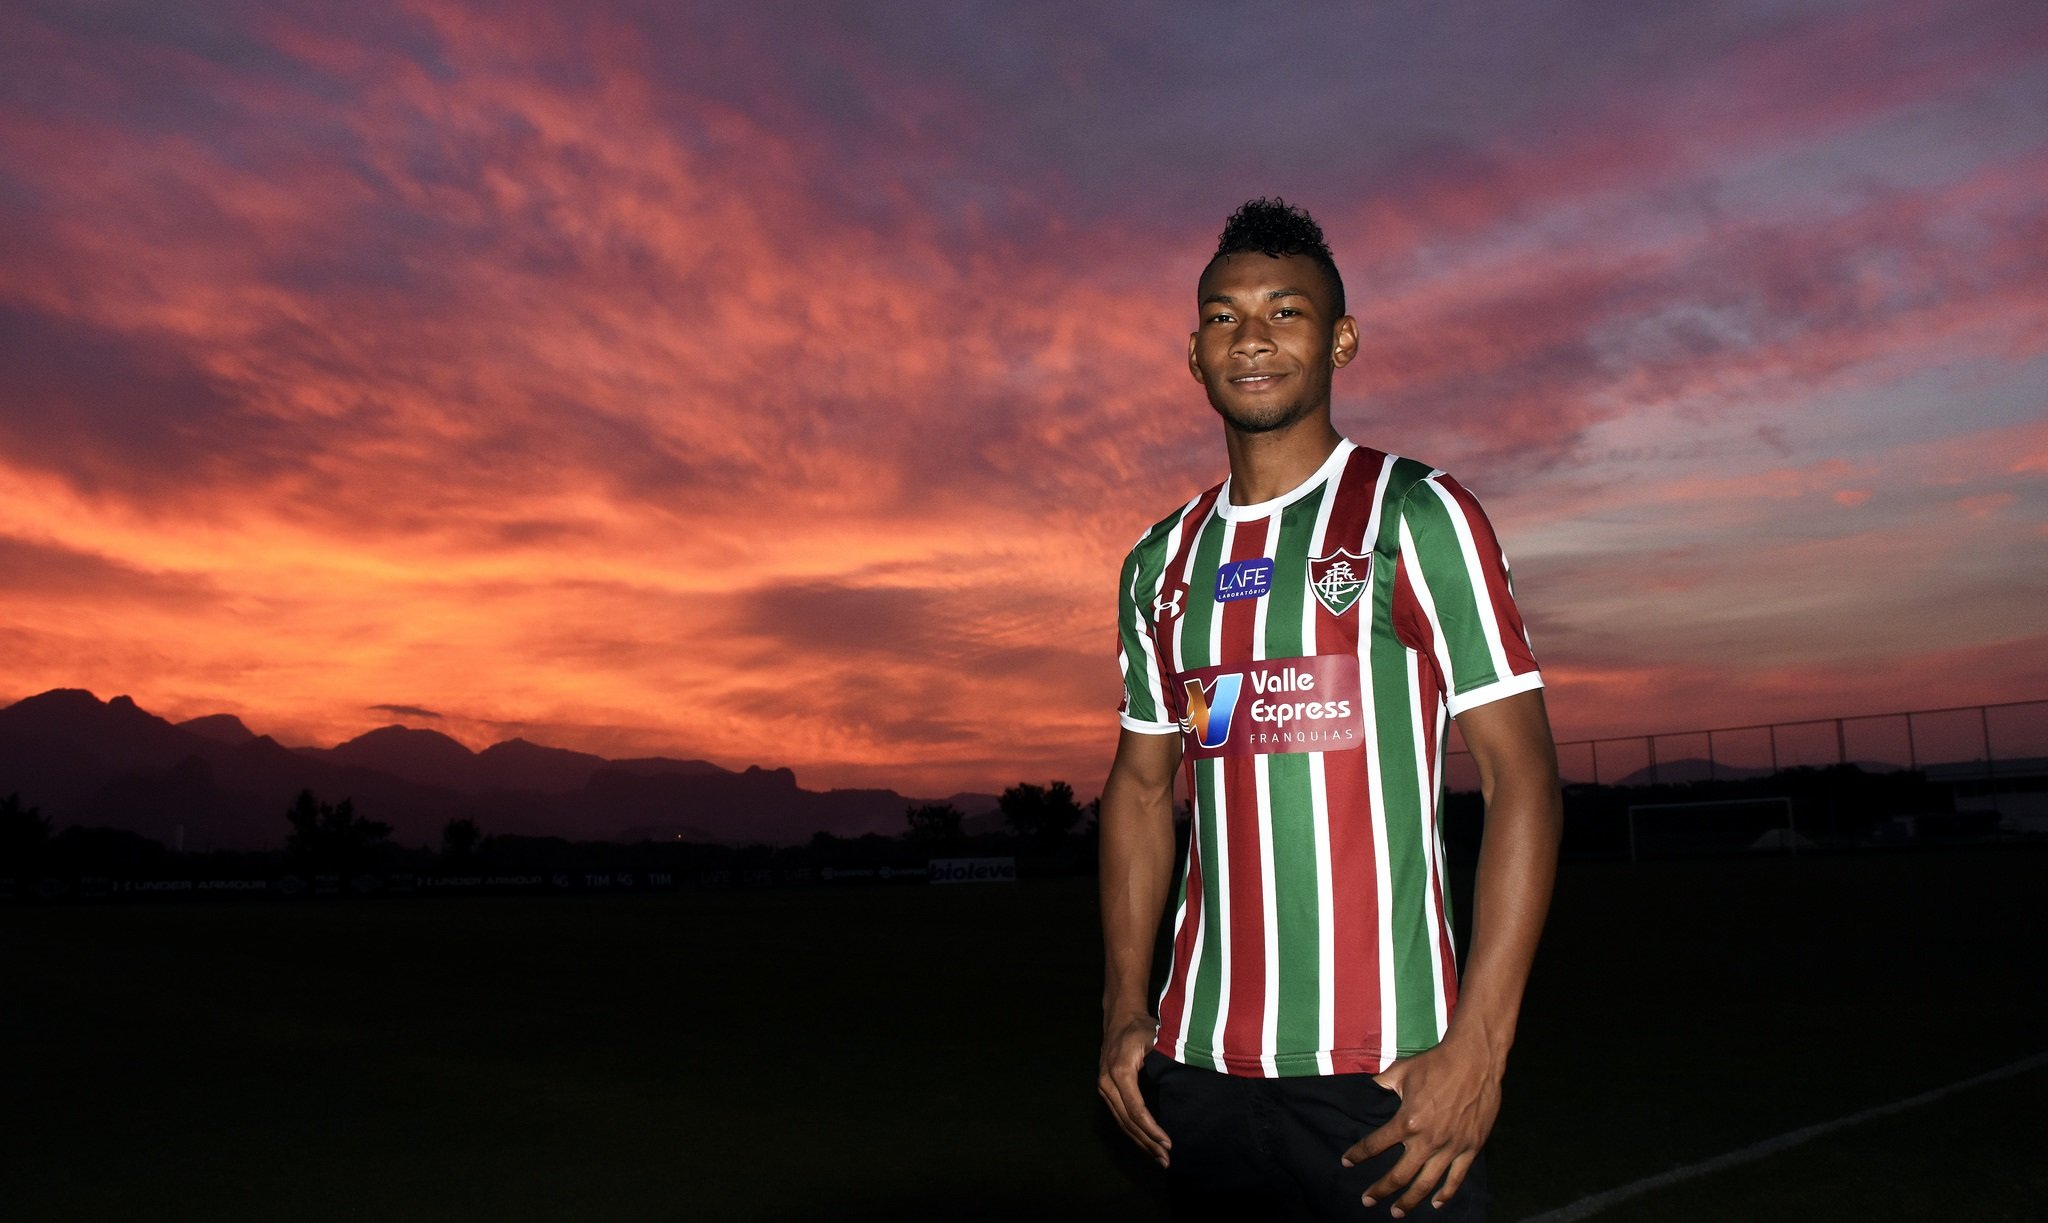 FECHADO: O Emelec confirmou a continuidade do atacante Bryan Cabezas, ex-Fluminense, em seu elenco até 2021.